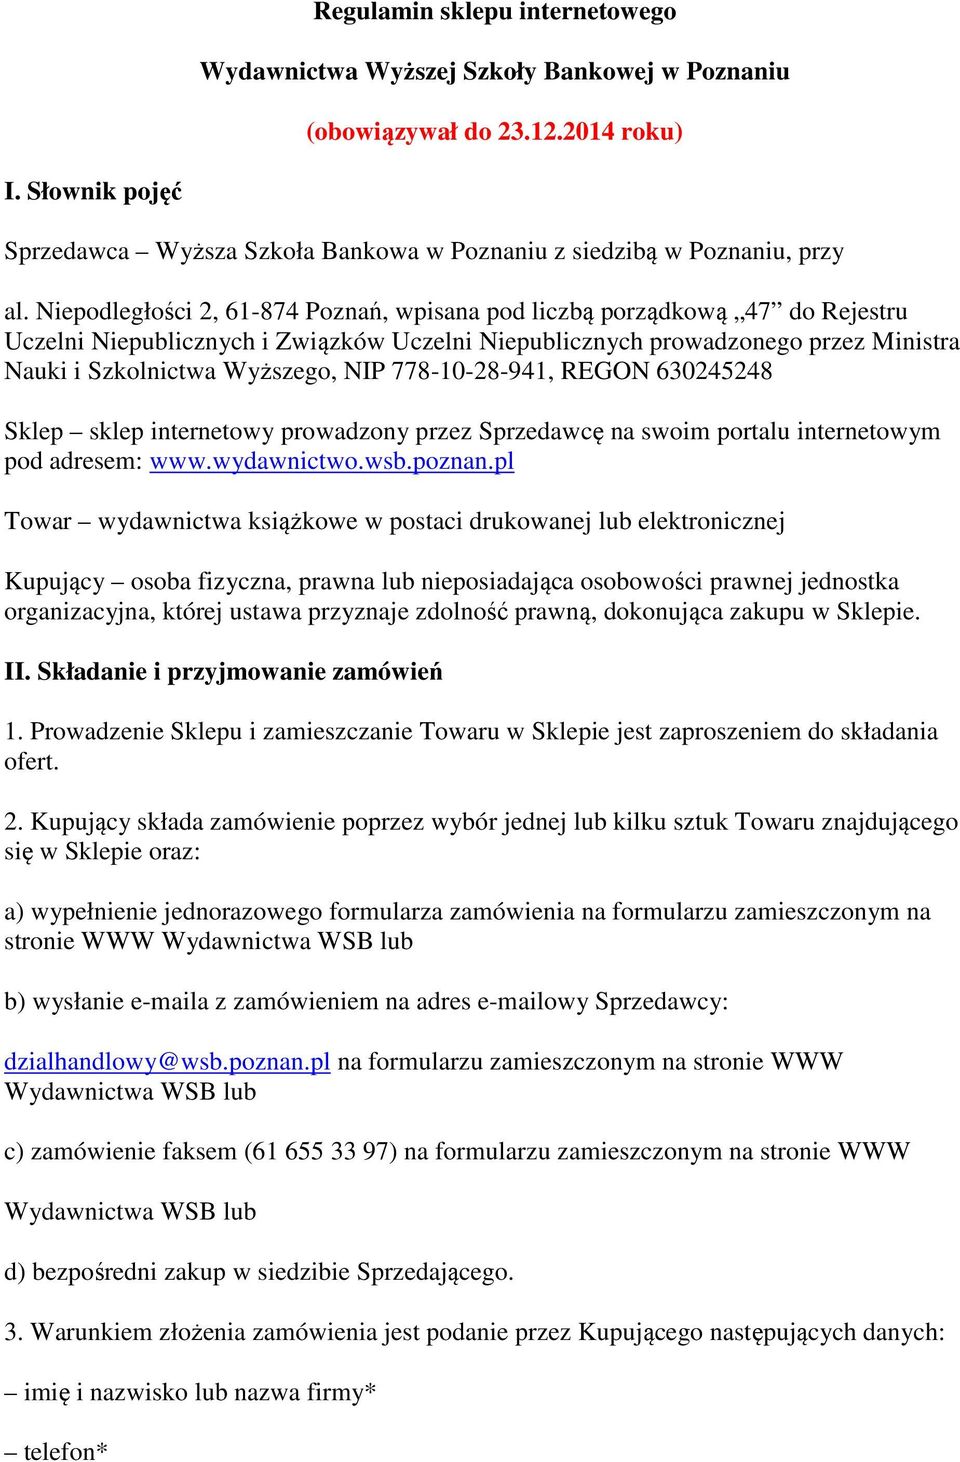 Niepodległości 2, 61-874 Poznań, wpisana pod liczbą porządkową 47 do Rejestru Uczelni Niepublicznych i Związków Uczelni Niepublicznych prowadzonego przez Ministra Nauki i Szkolnictwa Wyższego, NIP